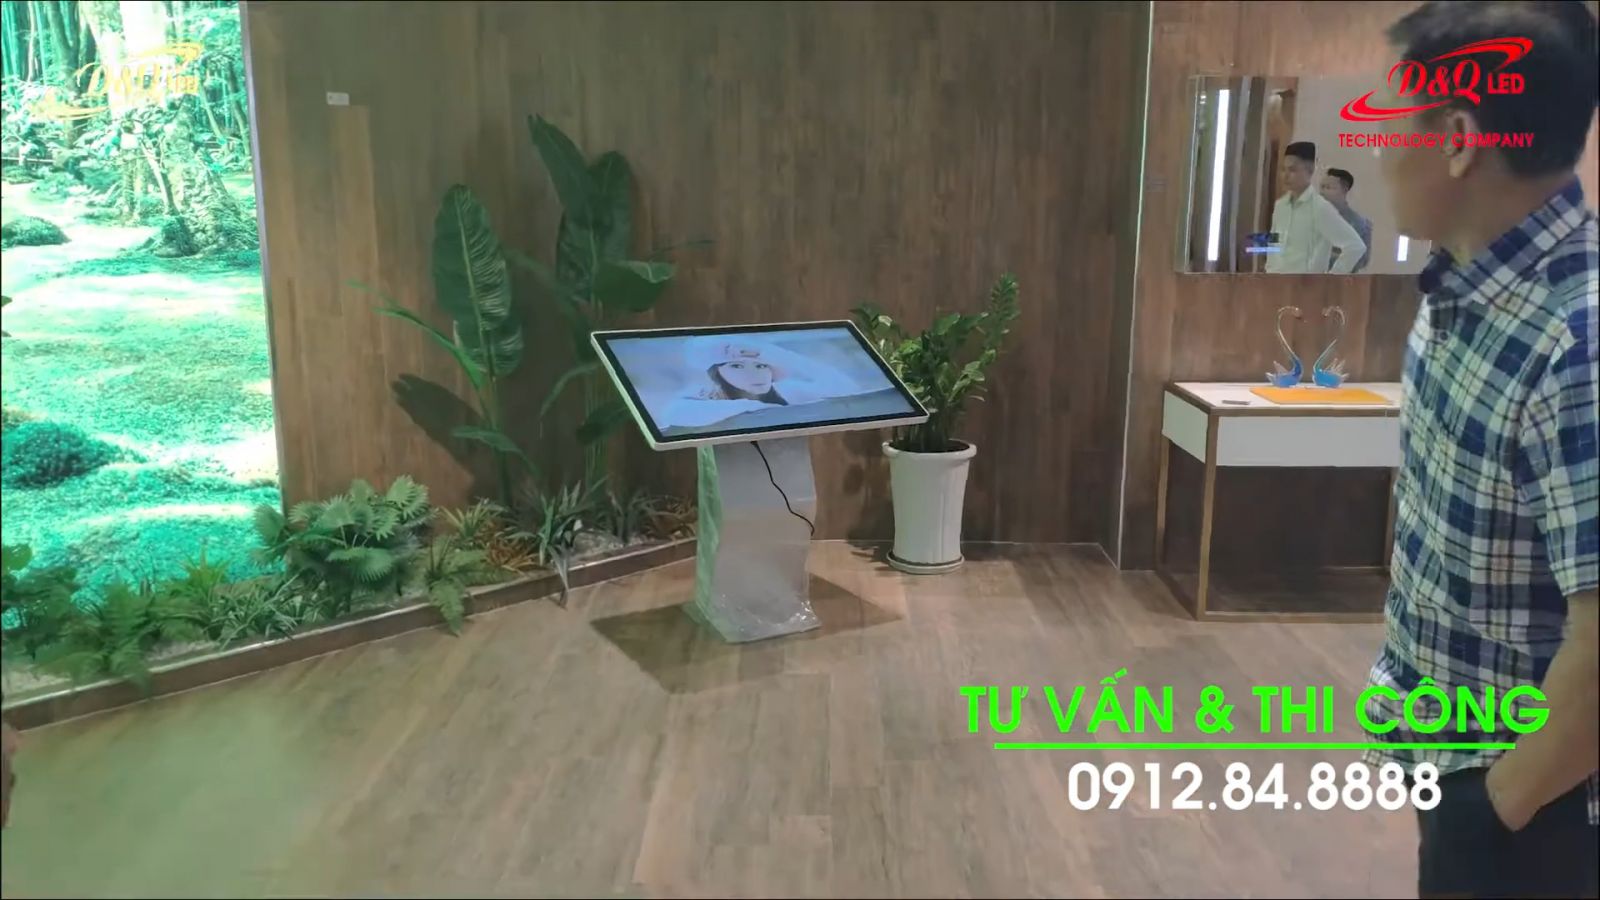 àn hình LCD Tương Tắc Cảm ứng Android 43 inch chân quỳ | Lắp đặt tại Viglacera hà nội